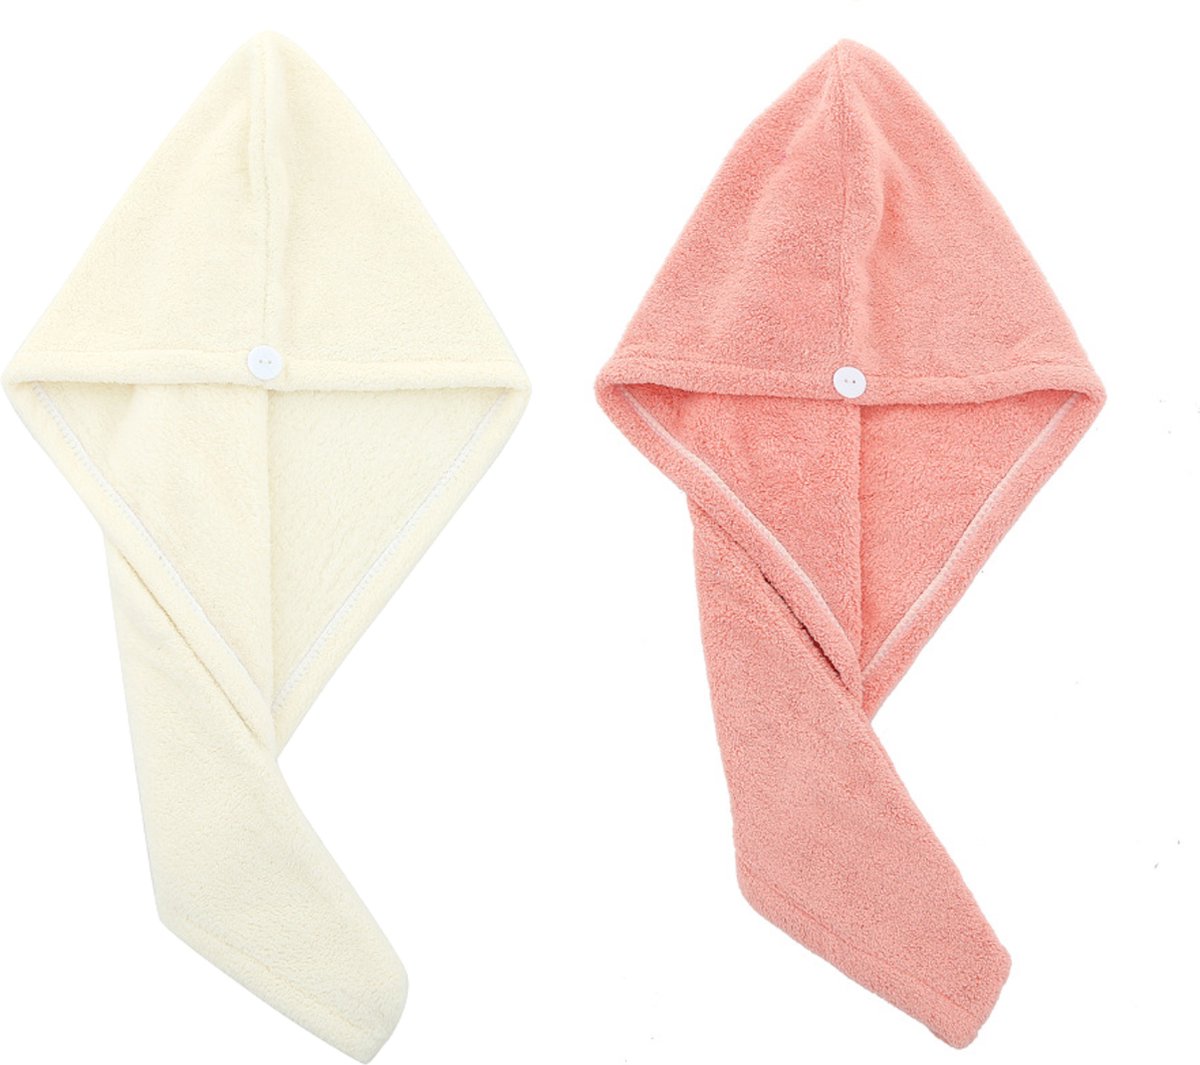 2x Haarhanddoek - Hoofdhanddoek - Hair towel - Sneldrogende handdoek - Haardroger - Haar handdoek - Wit/Roze